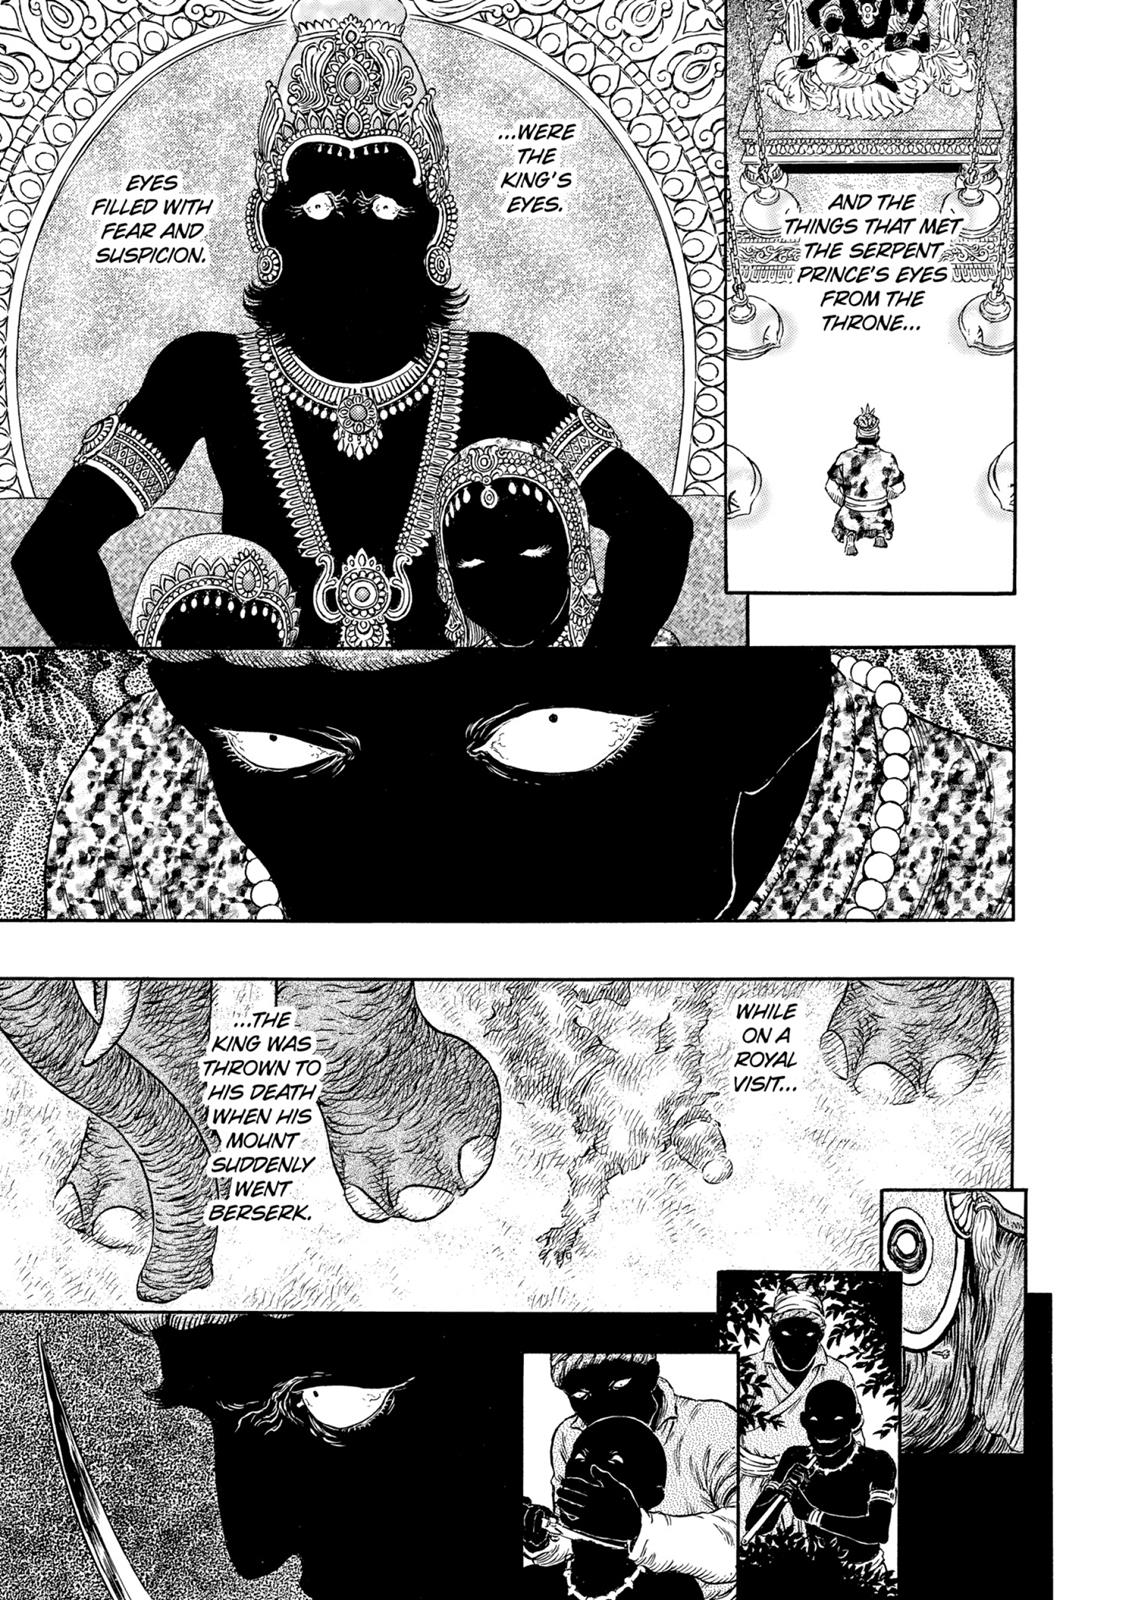 Berserk Manga Chapter 303 image 04